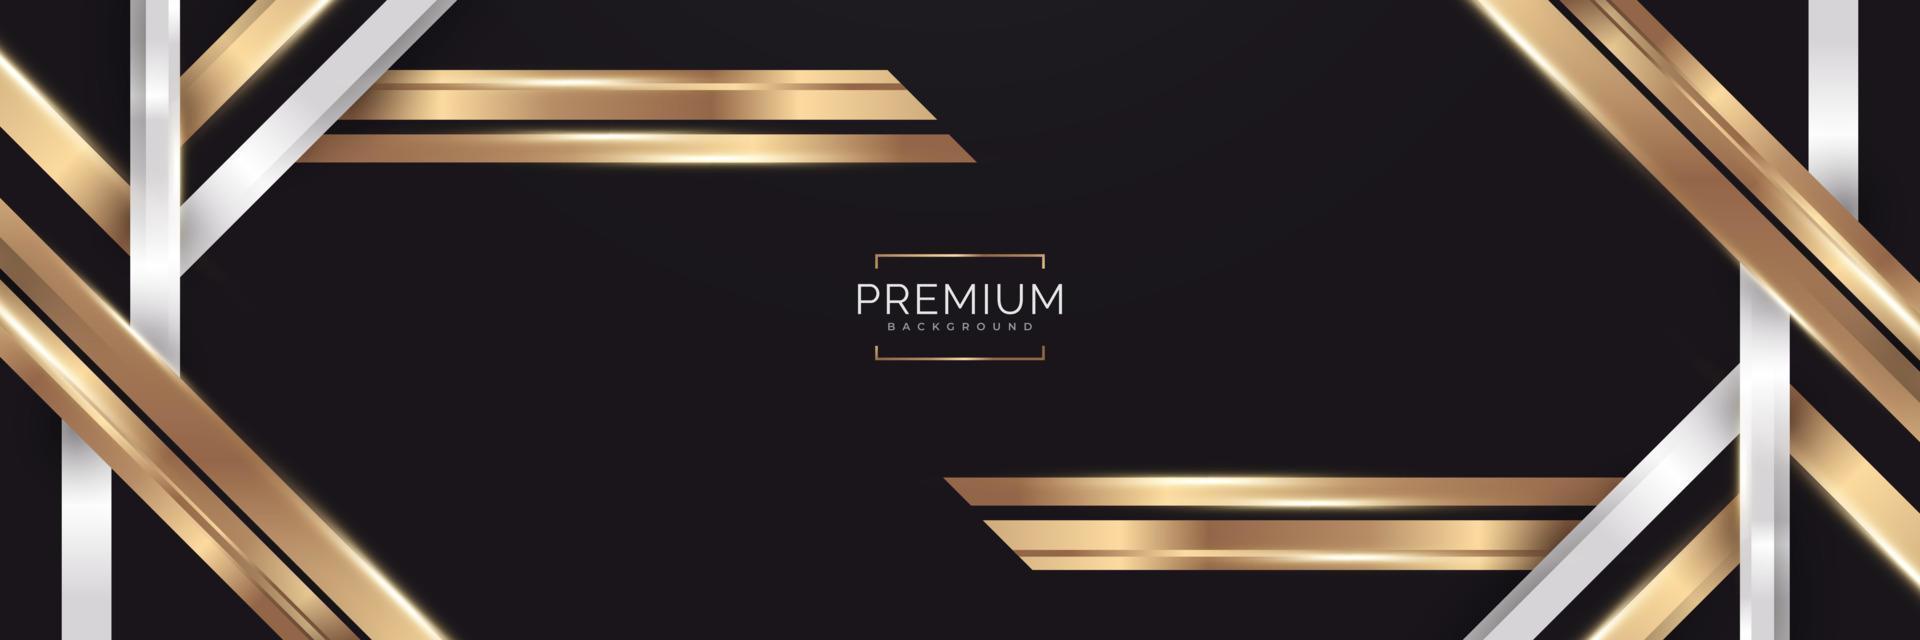 abstrakter weißer, schwarzer und goldener luxushintergrund. eleganter Premium-Hintergrund mit Papierschnitt-Stil vektor